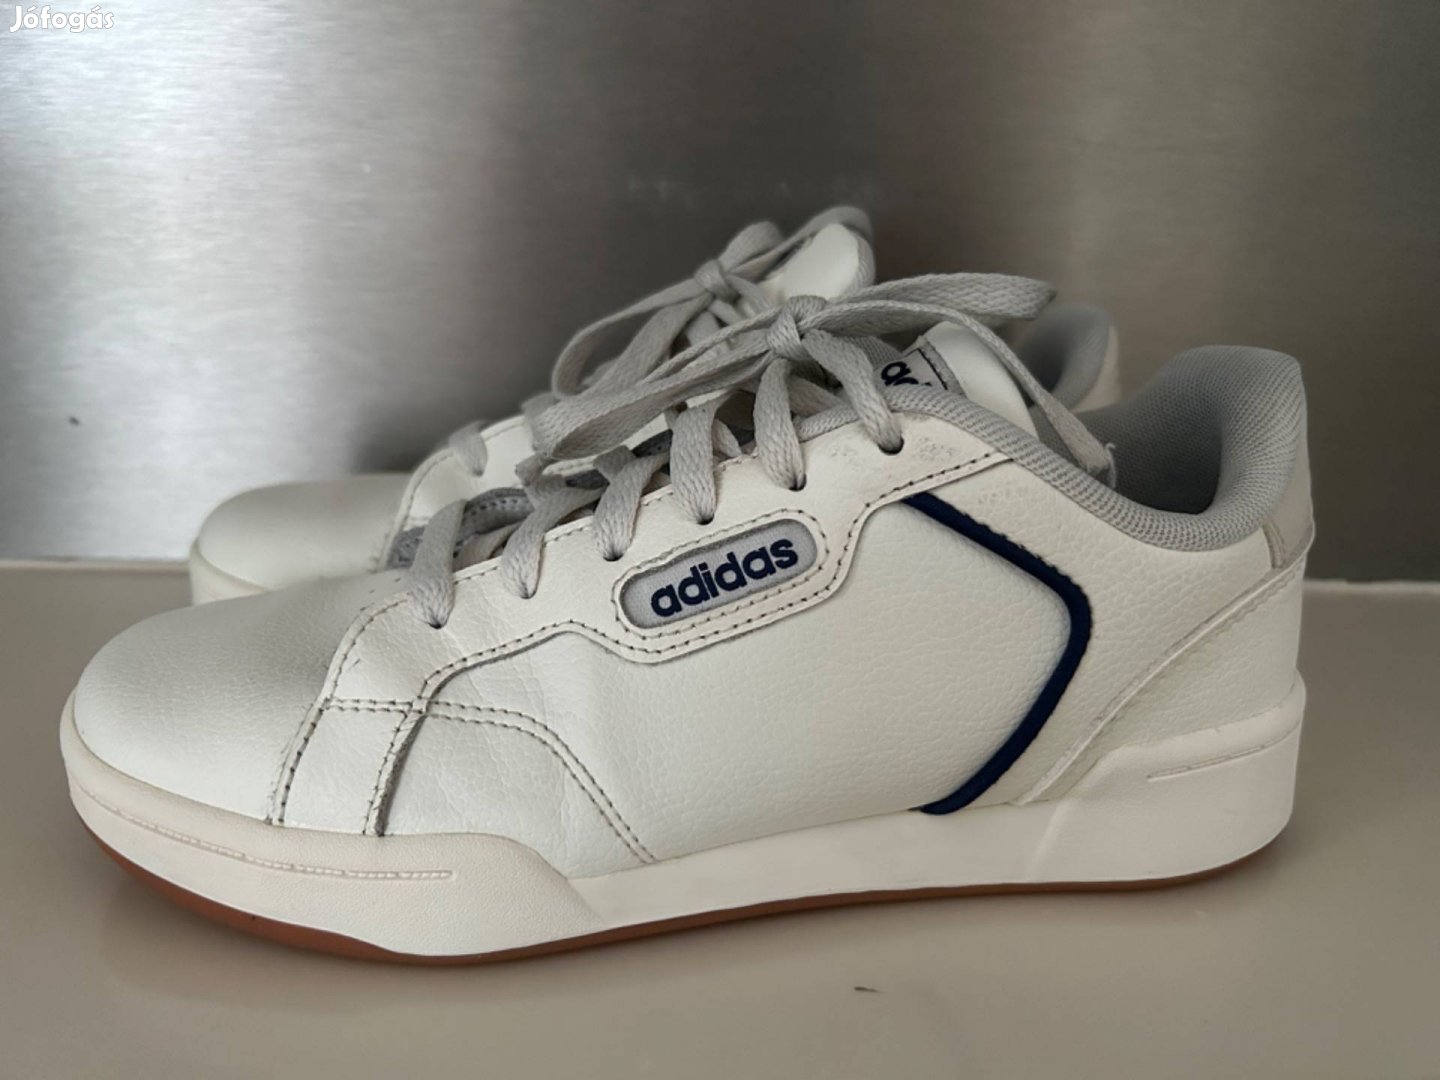 Adidas cipő 36